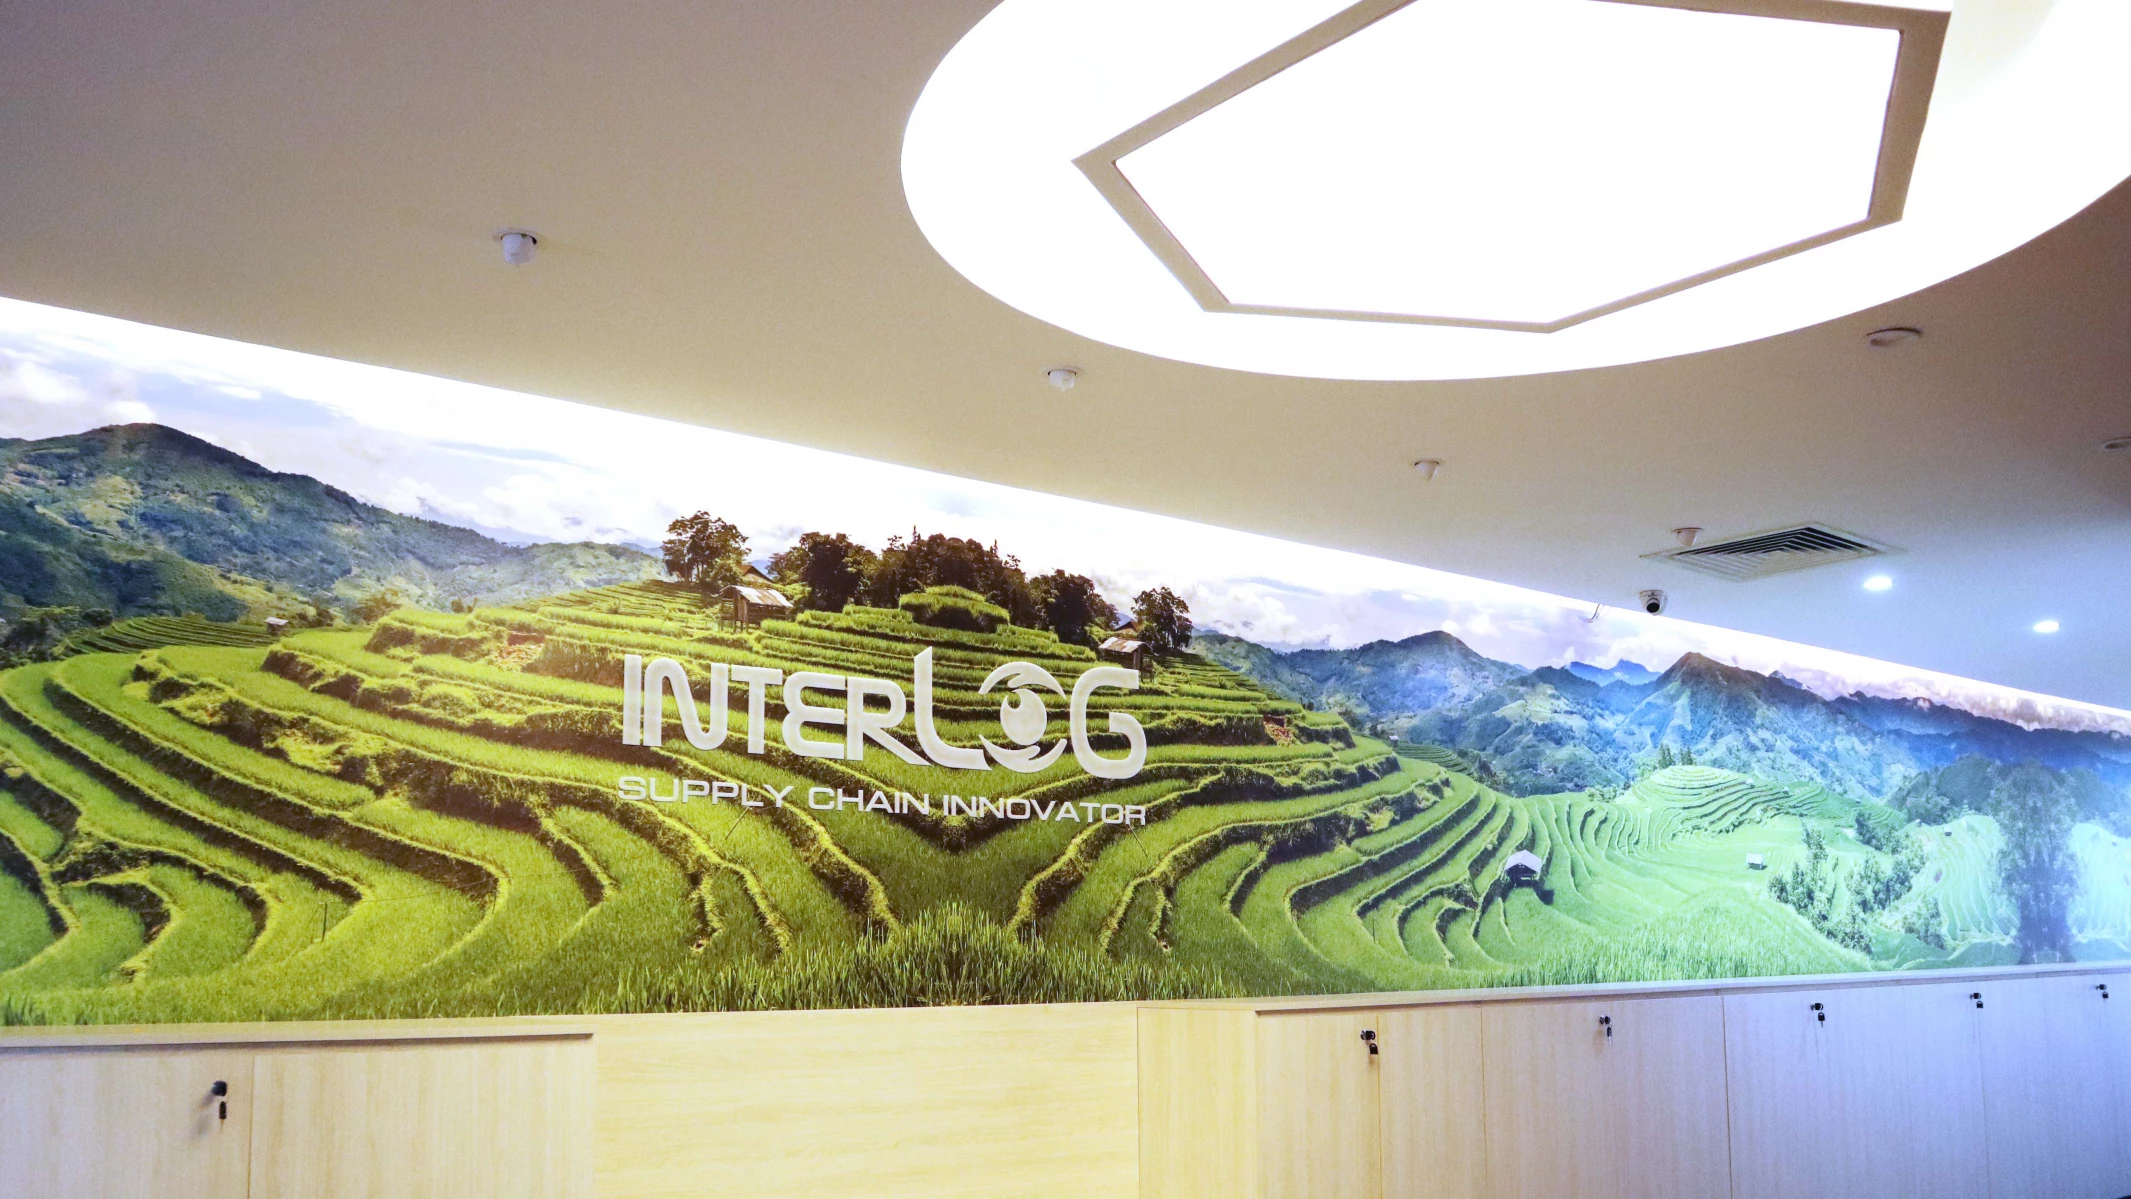 InterLOG khởi tạo không gian làm việc mới với phong cách Lean - Green & Innovation